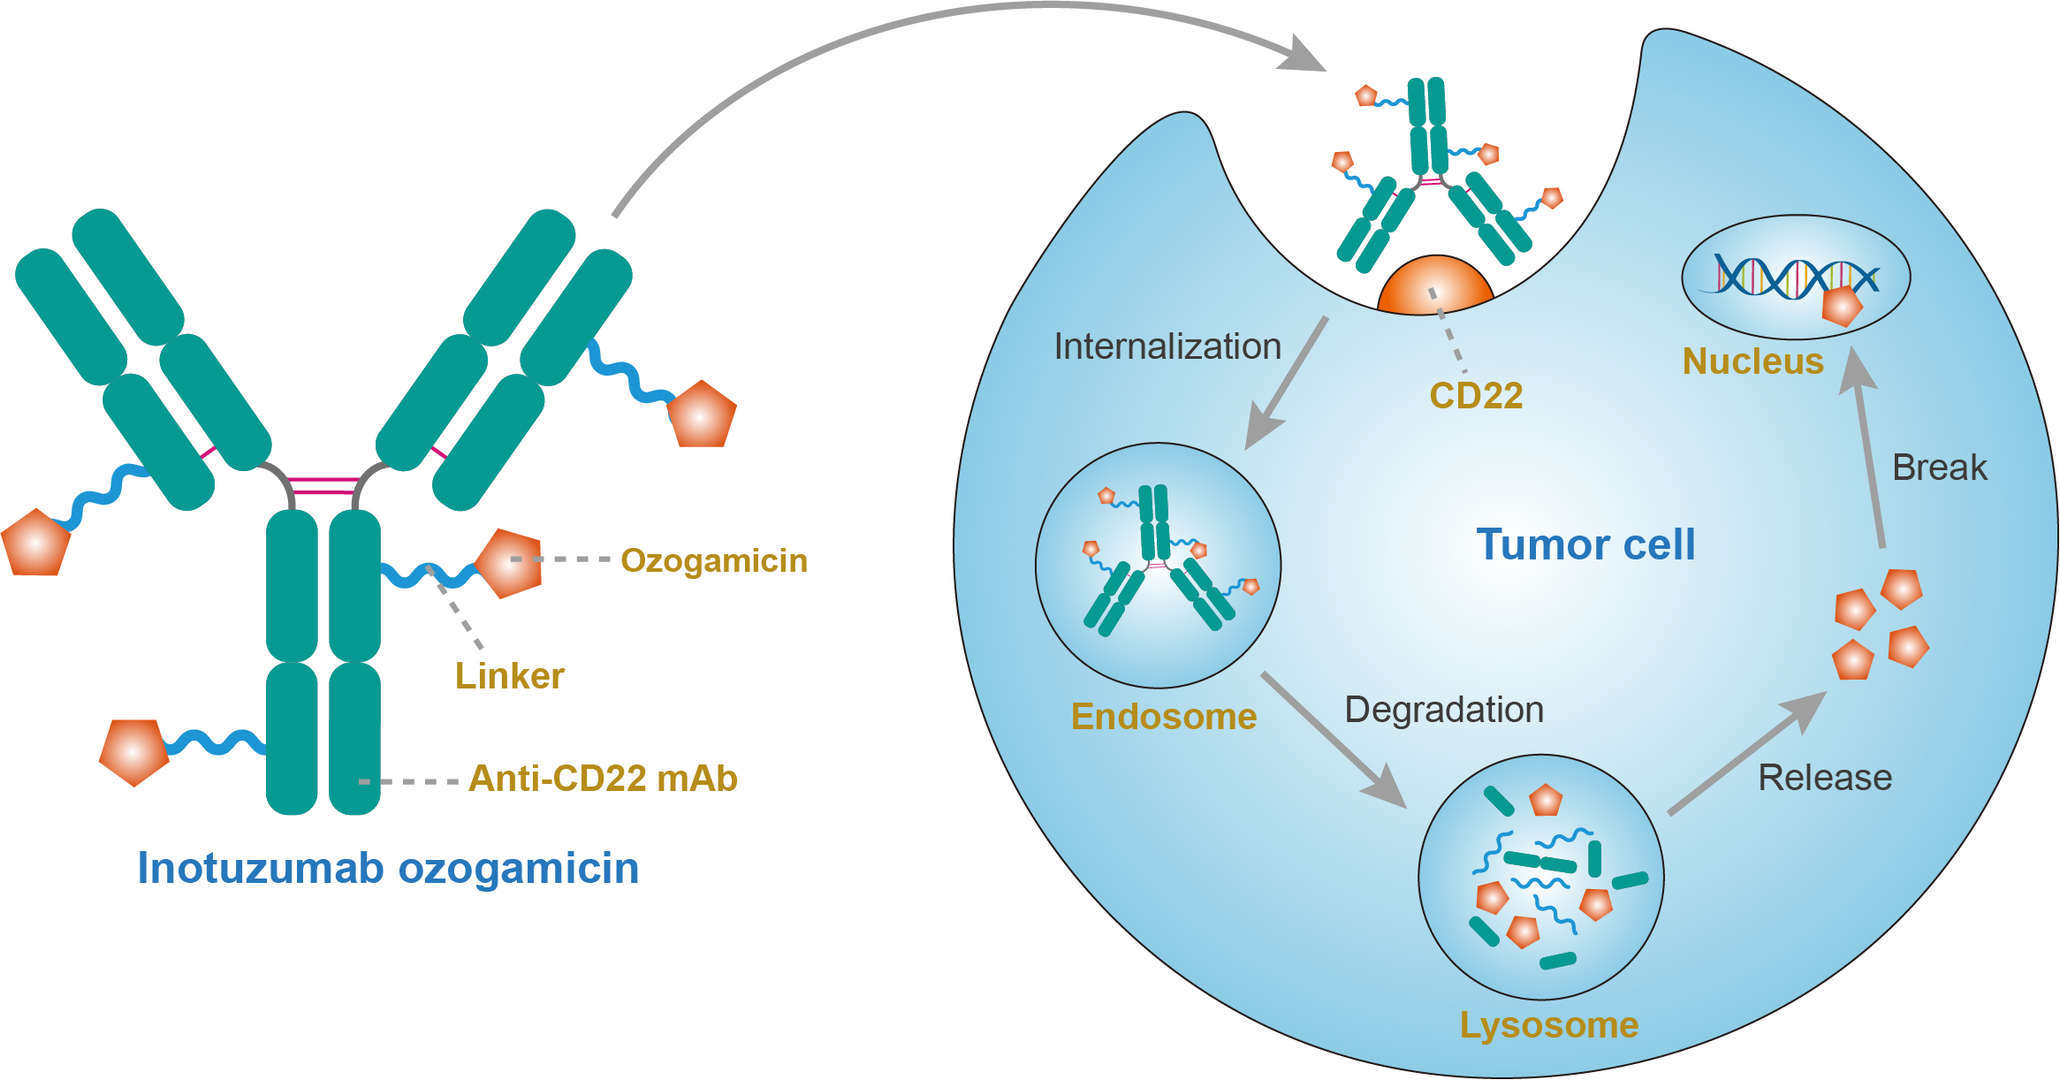 Mechanism of action of inotuzumab ozogamicin